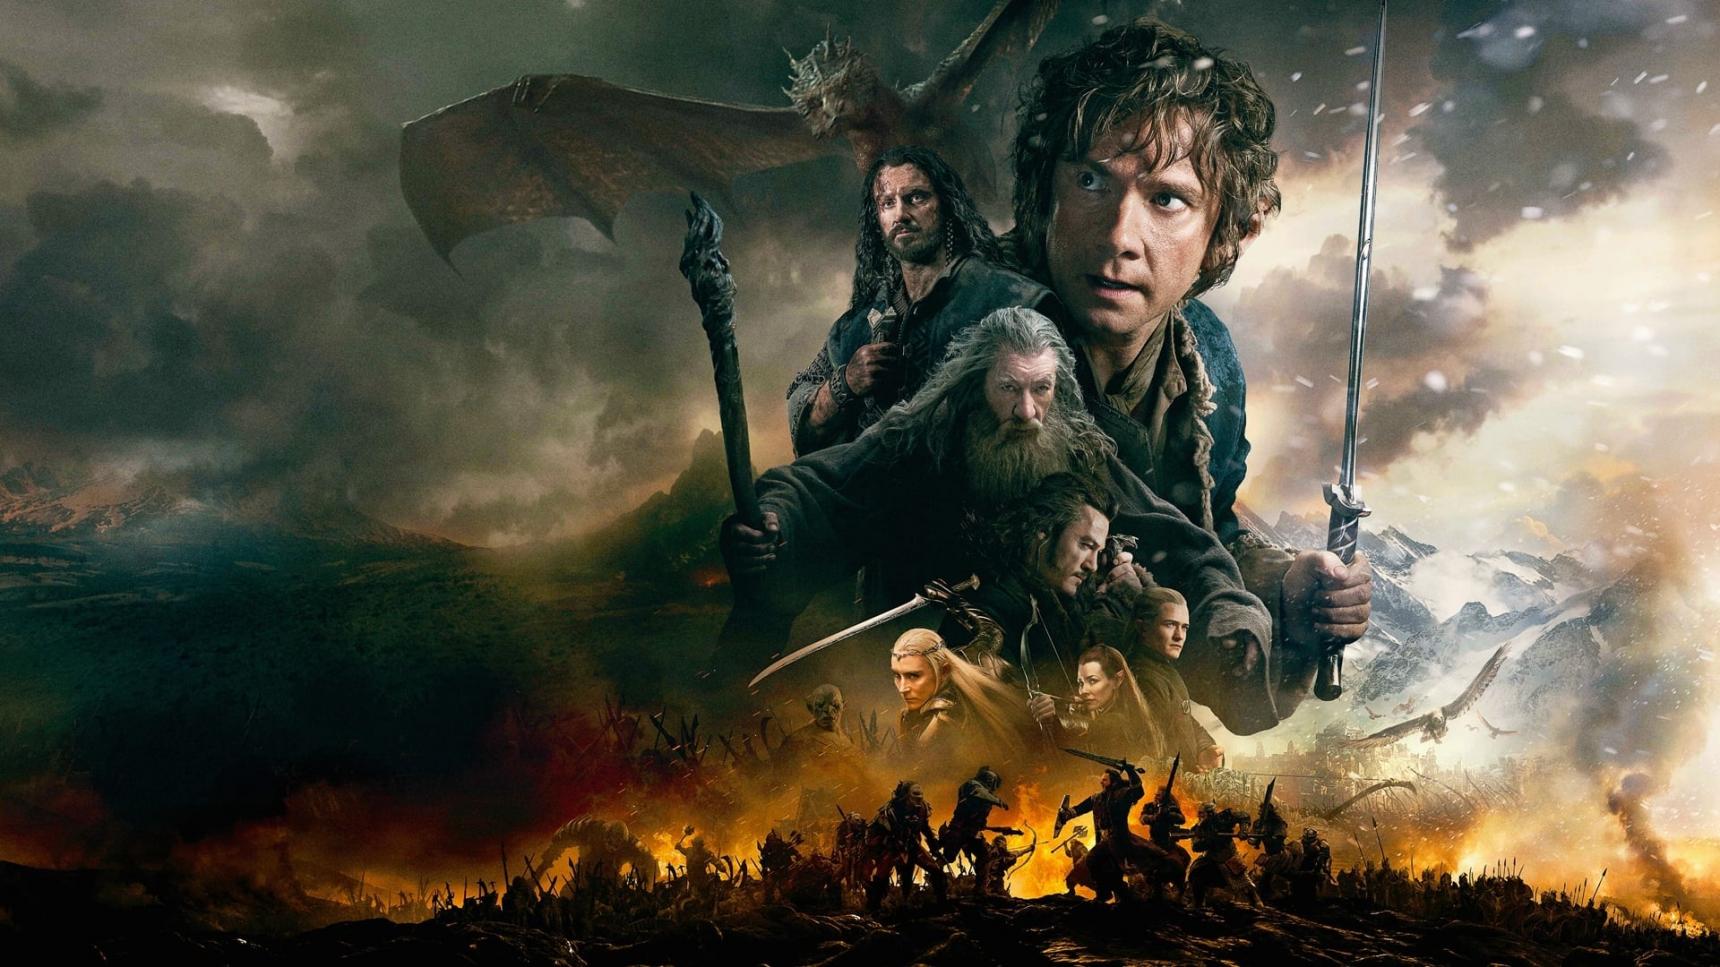 poster de El hobbit: La batalla de los cinco ejércitos